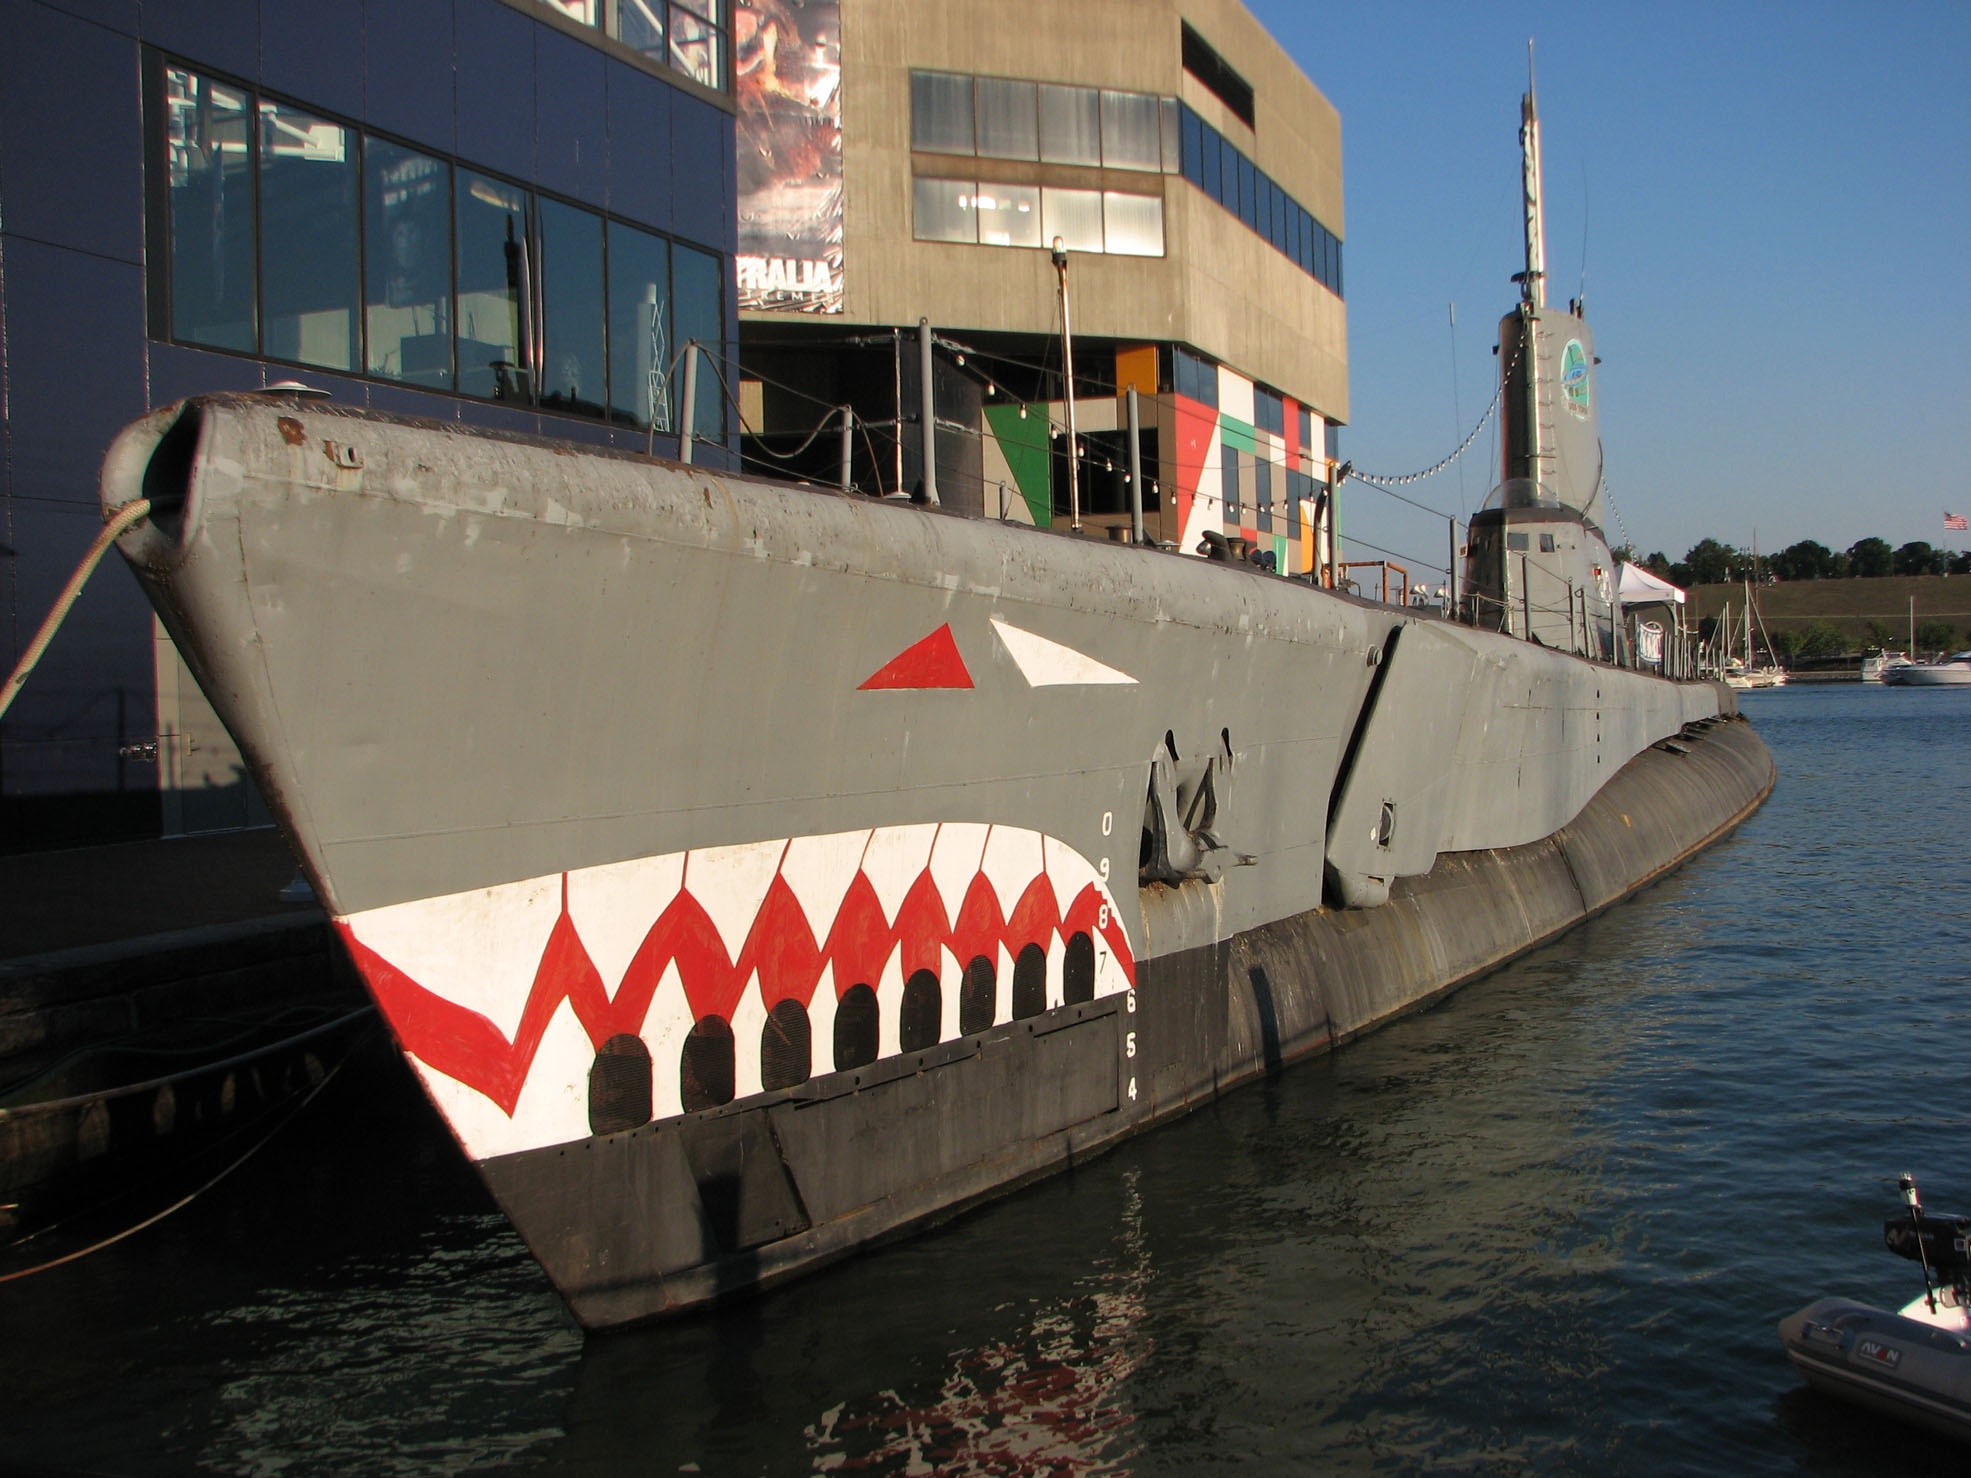 Us navy submarine - lopierotic